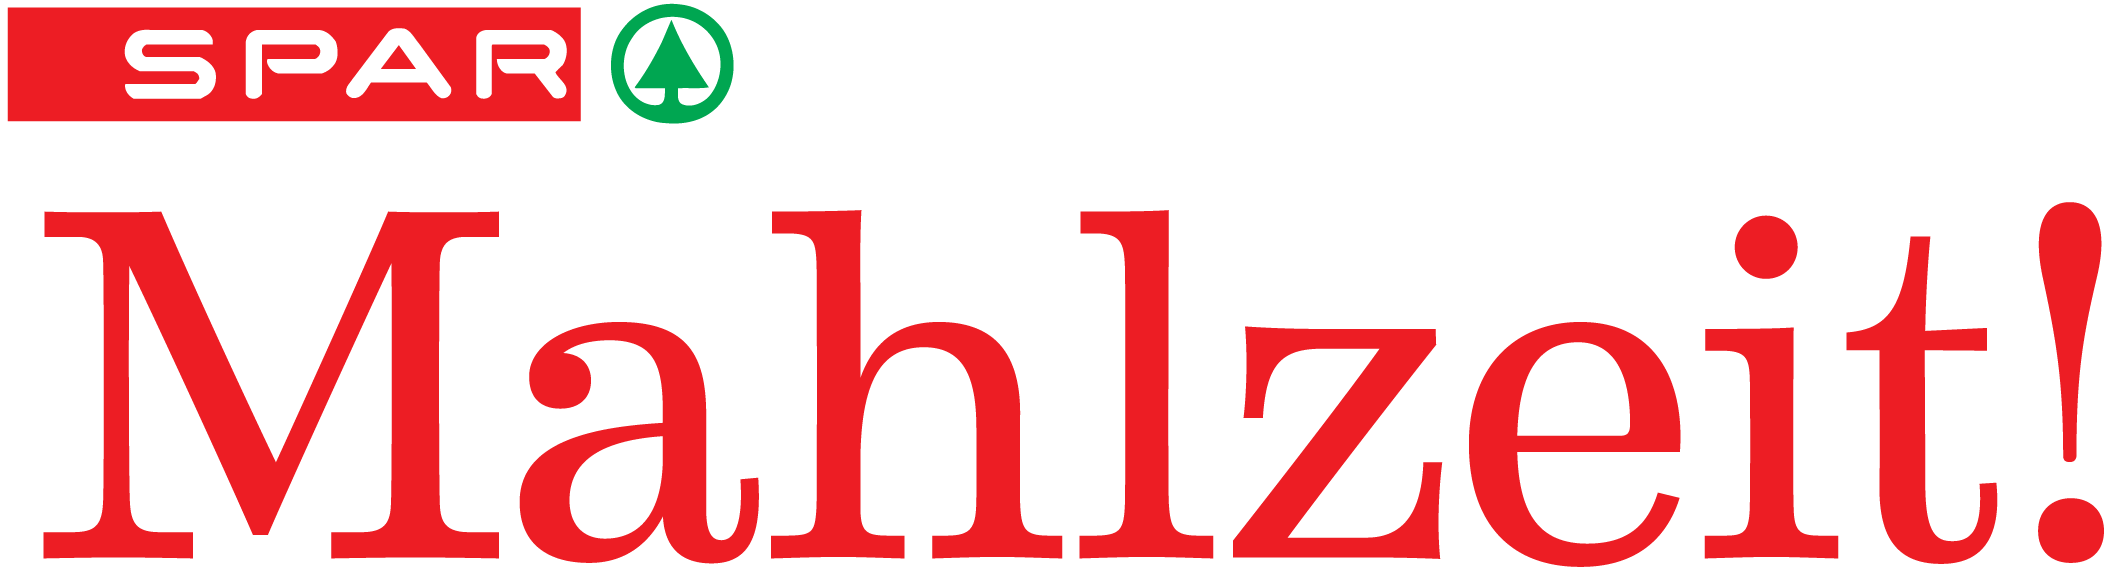 SPAR Mahlzeit!, Logo, rot, großes SPAR Logo